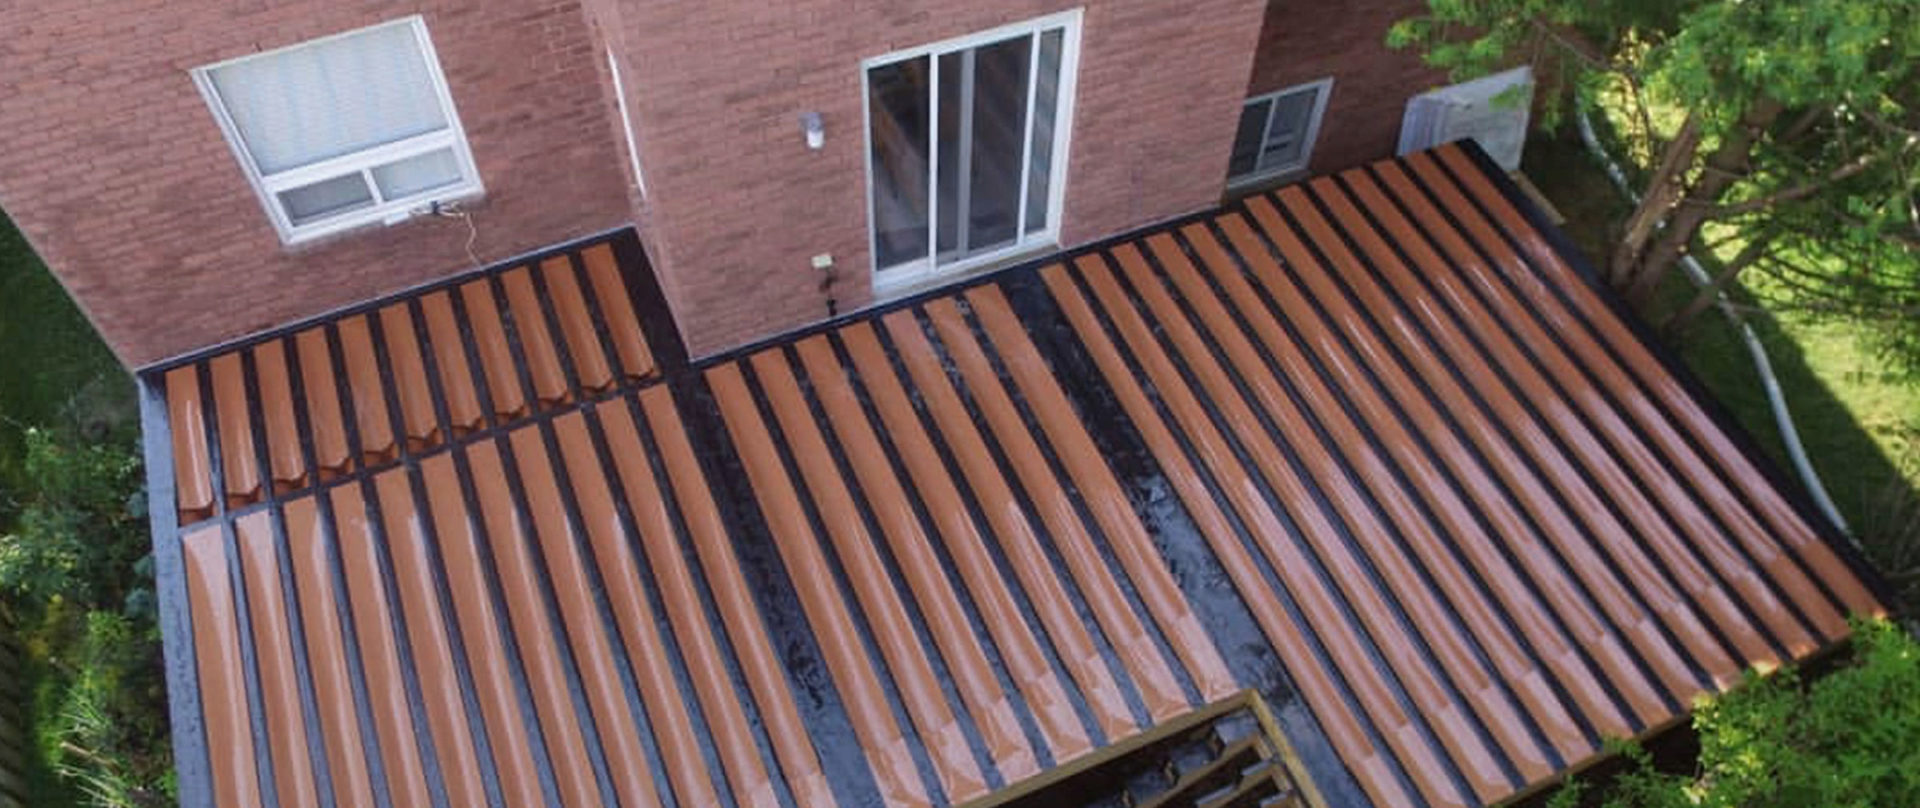 trex rainescape deck drainage system reviews